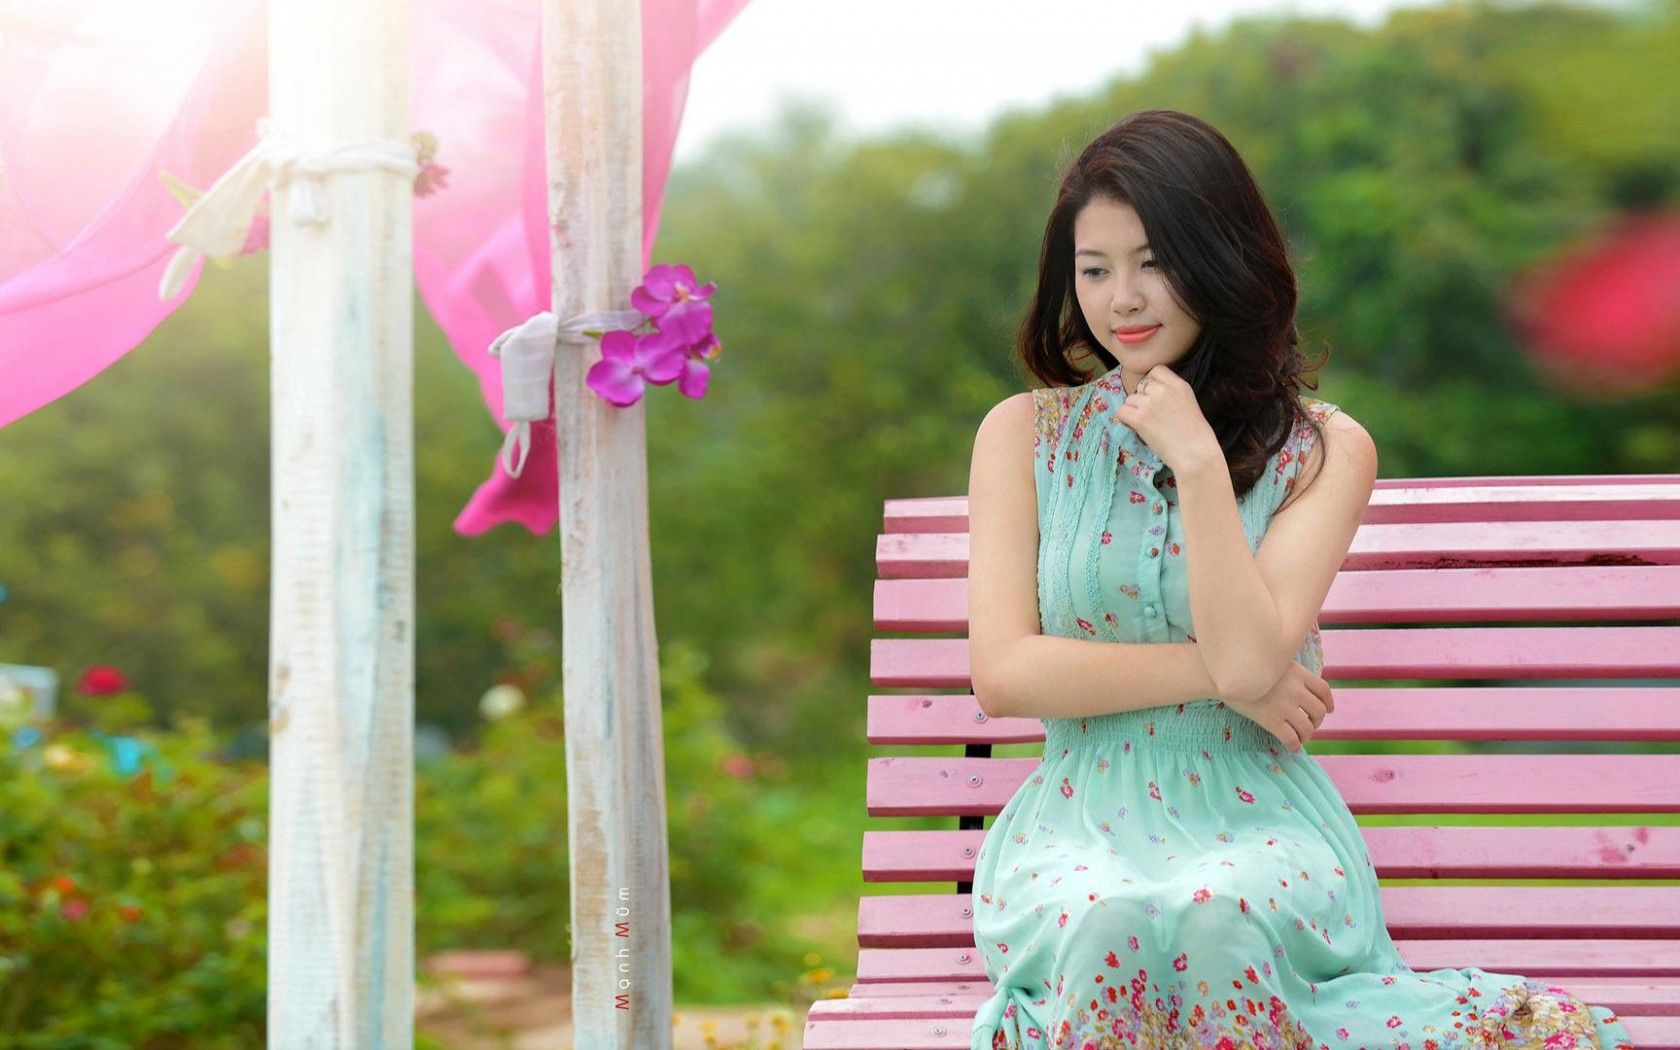 Cute asian girl HD desktop wallpaper, Widescreen, High